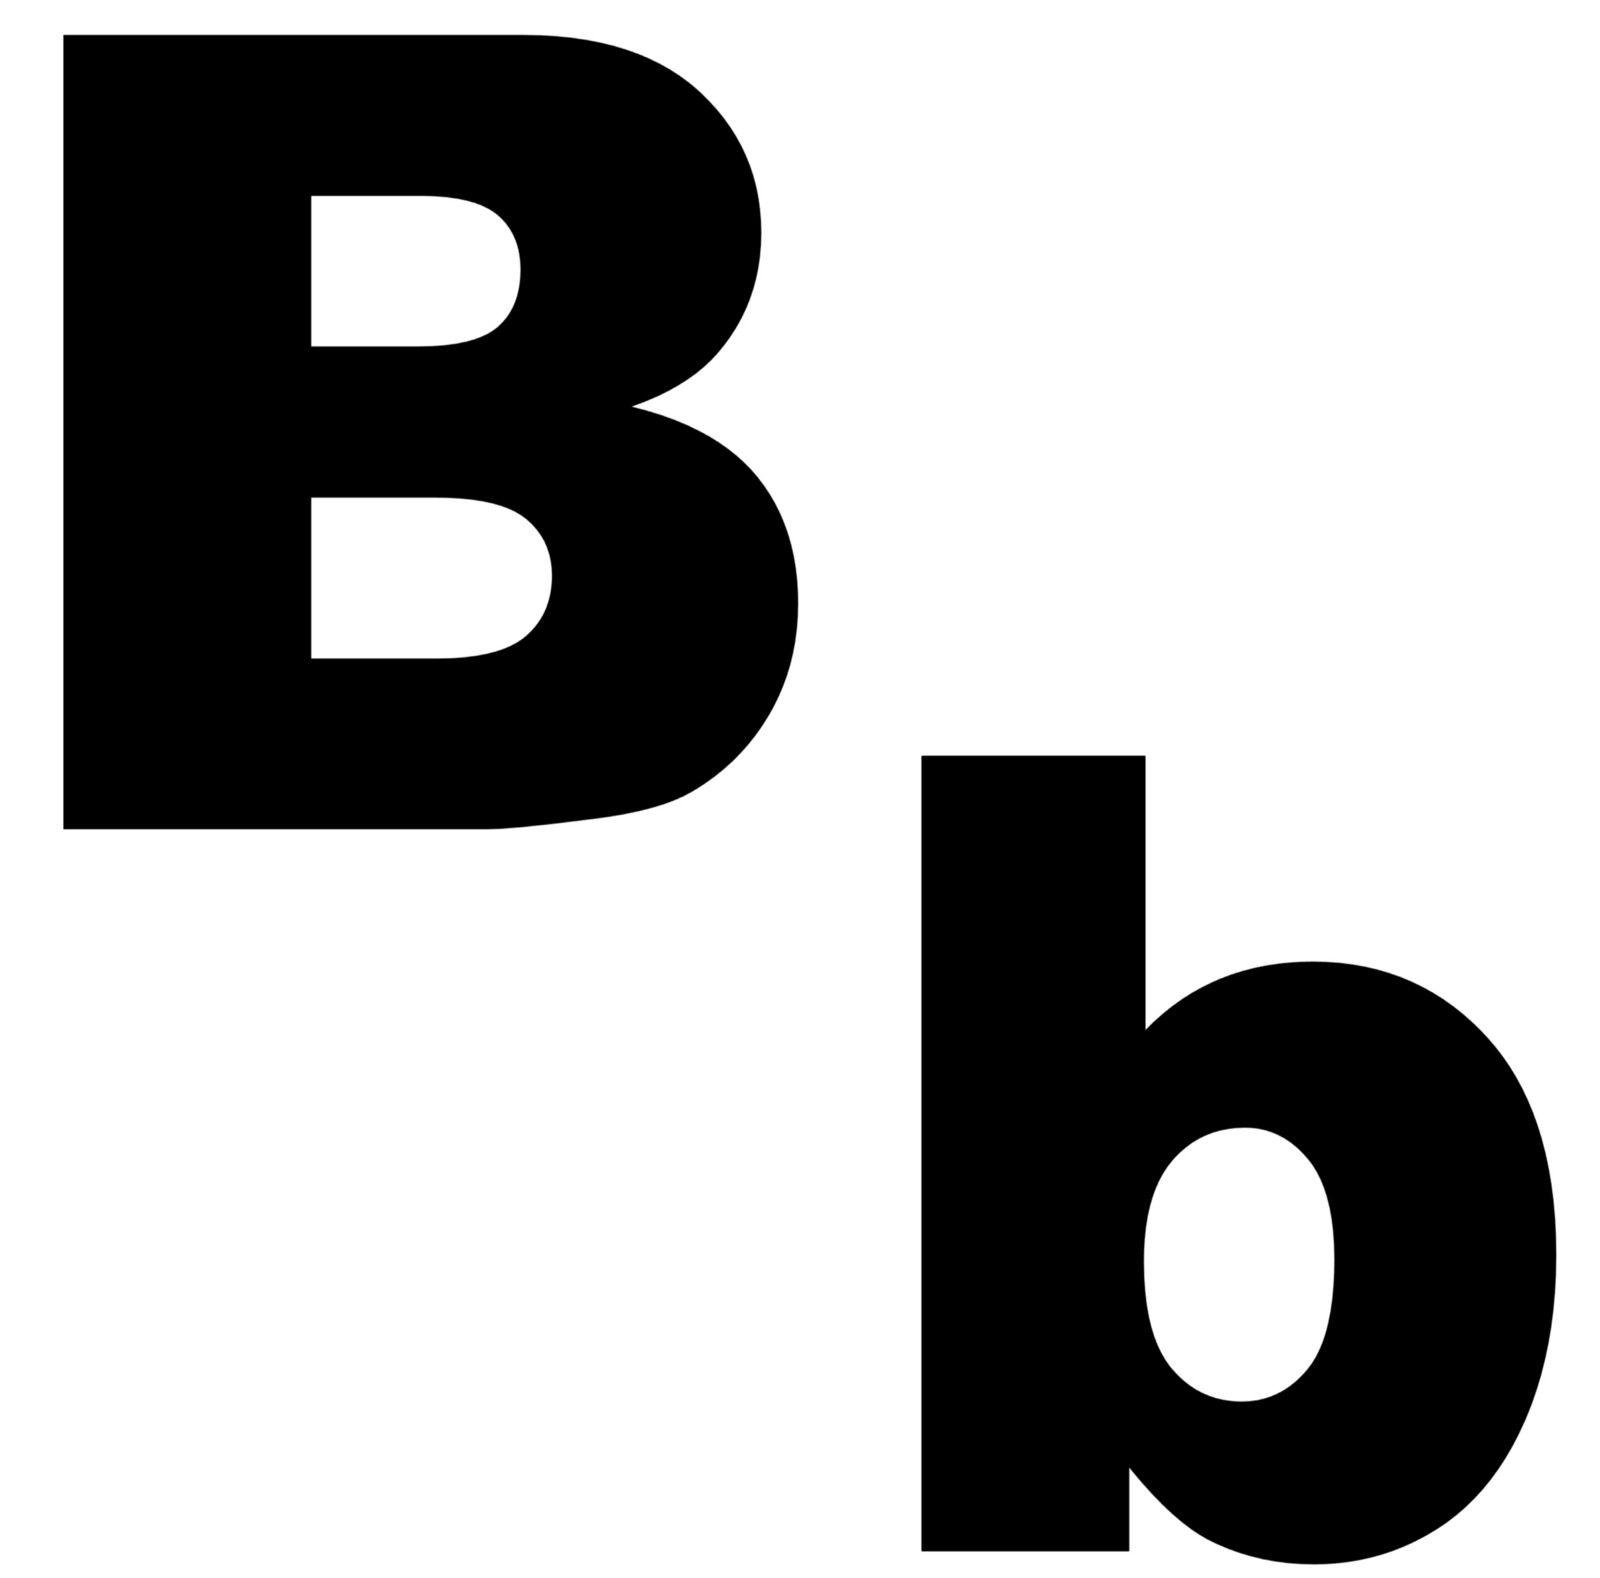 Capital B Logo - Capital B, Please – Sam McKenzie Jr. – Medium